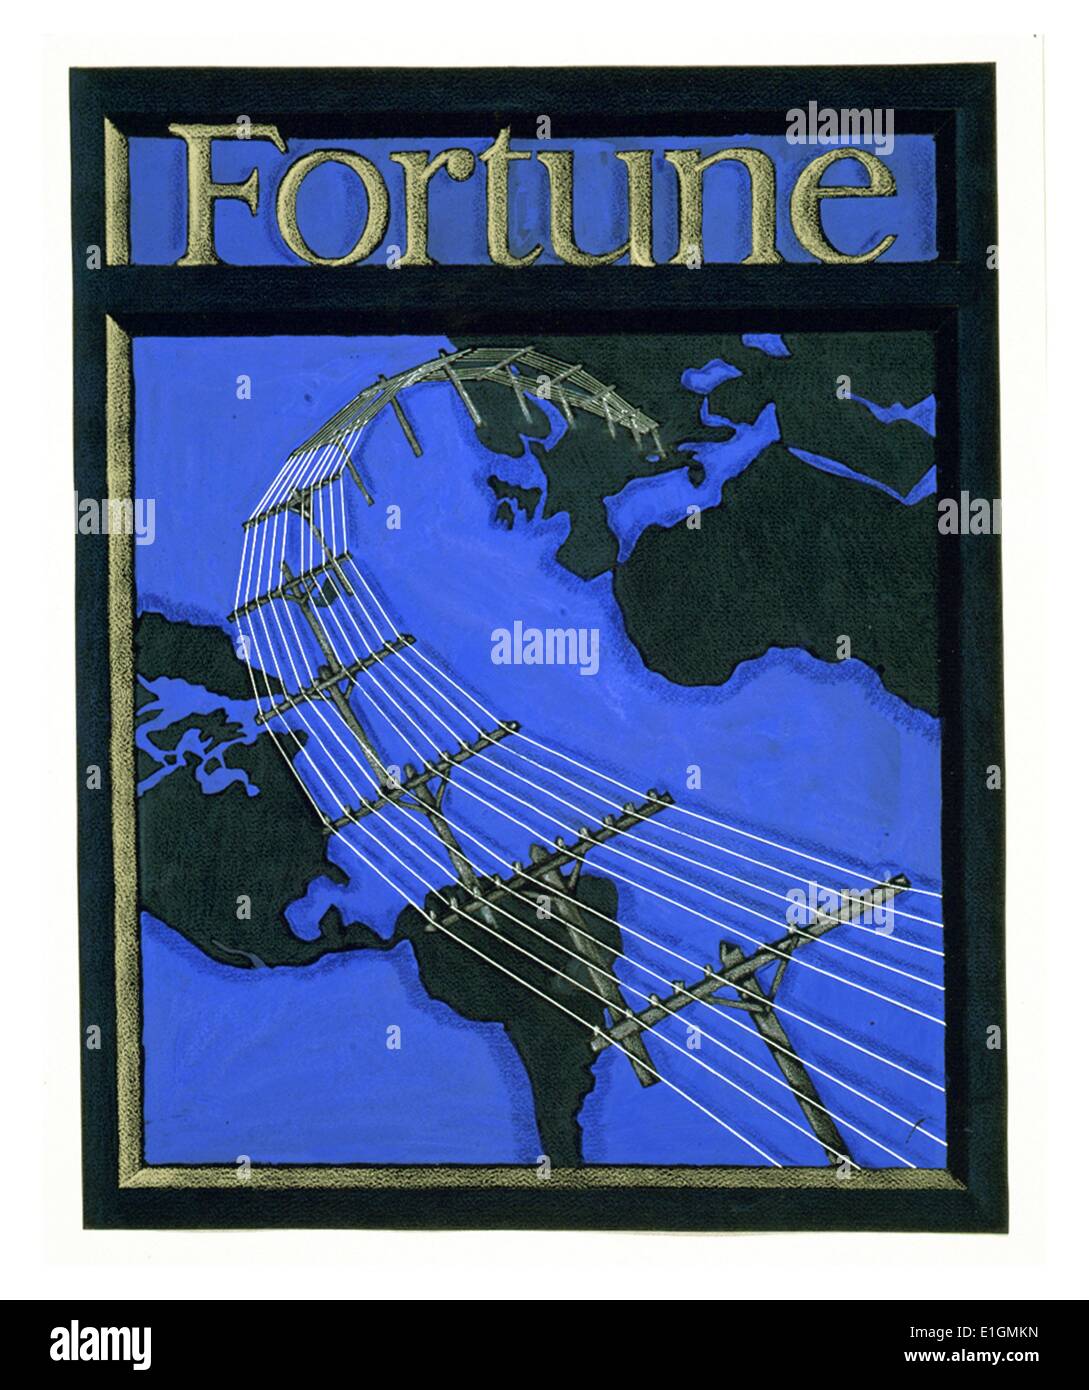 Conception de la couverture pour le magazine Fortune montrant les lignes de téléphone dans le monde entier. dessin sur papier noir : graphite, pastel, l'encre et gouache, couleur. Banque D'Images